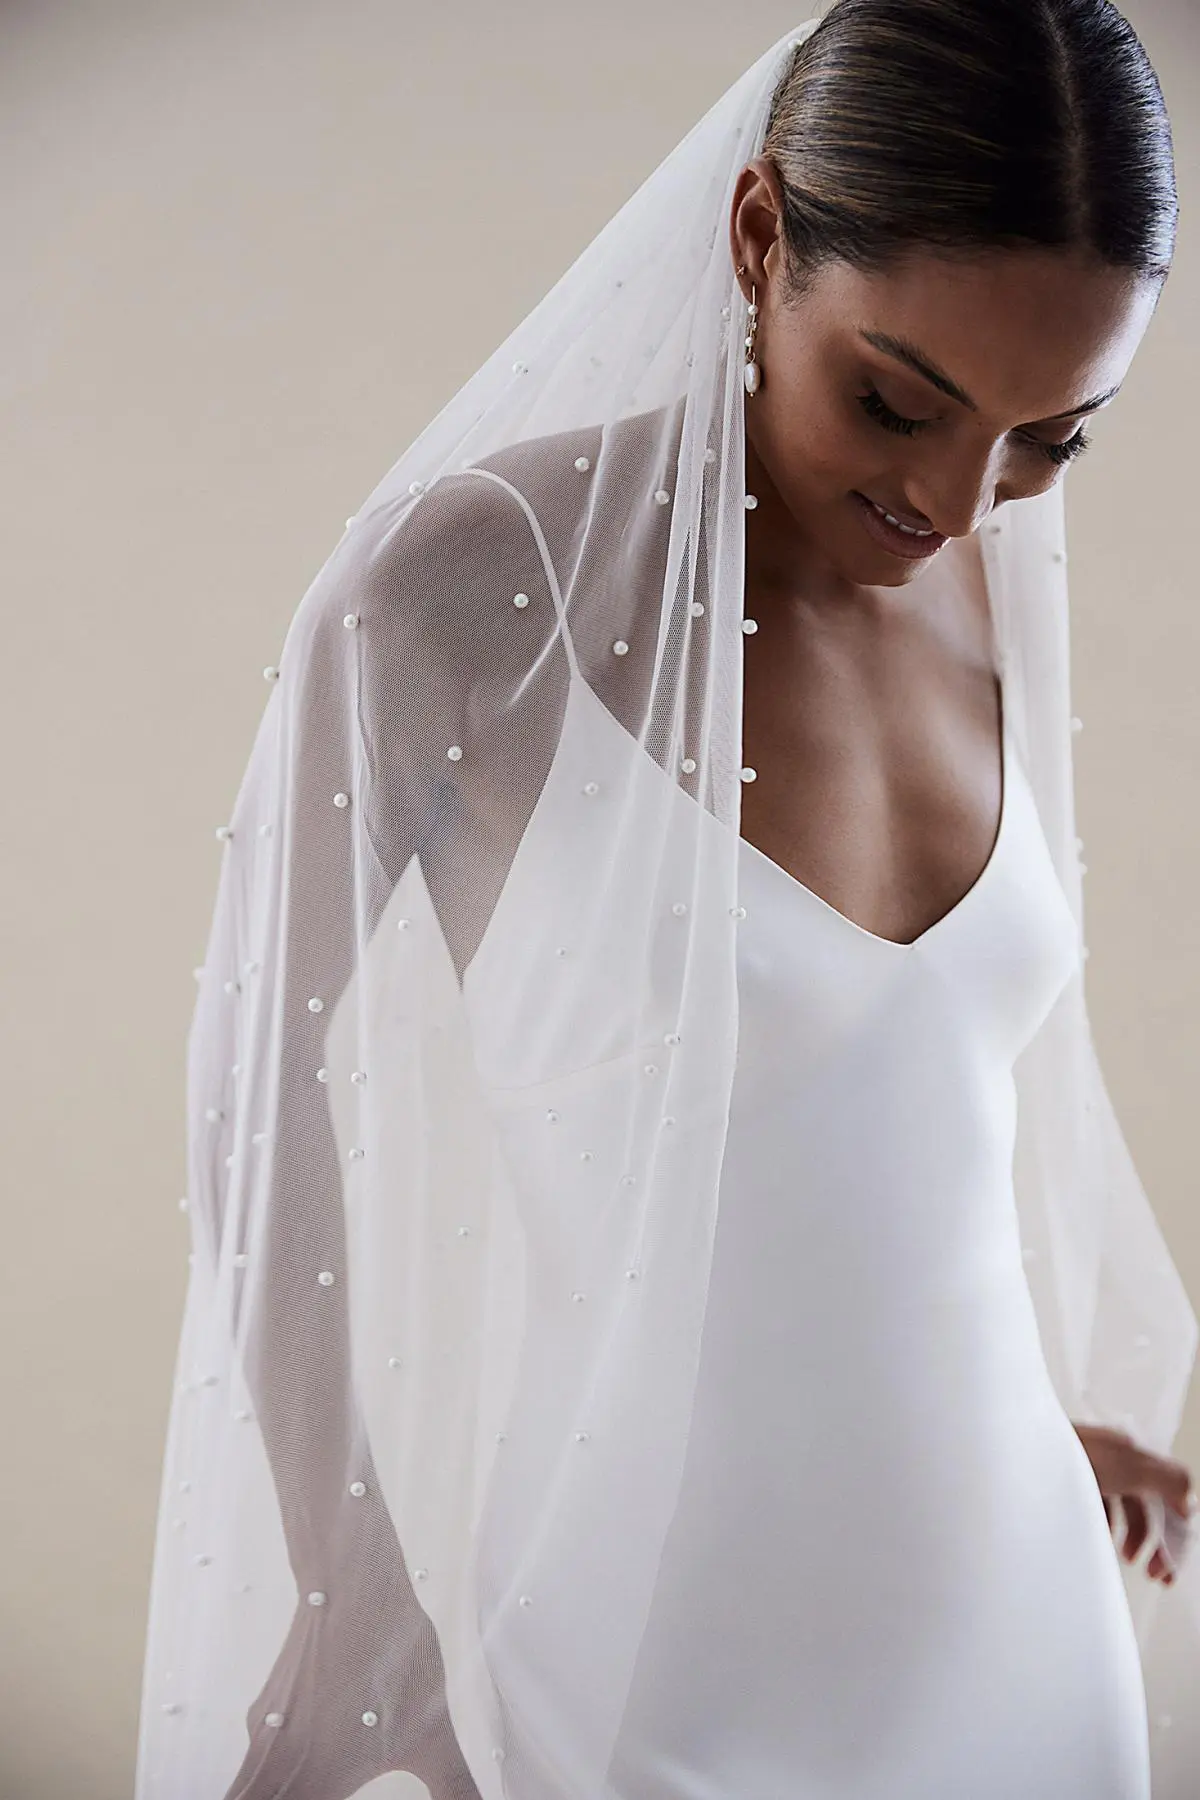 Pearl Veil Simple Wedding Veil With Pearls Karen Willis Holmes